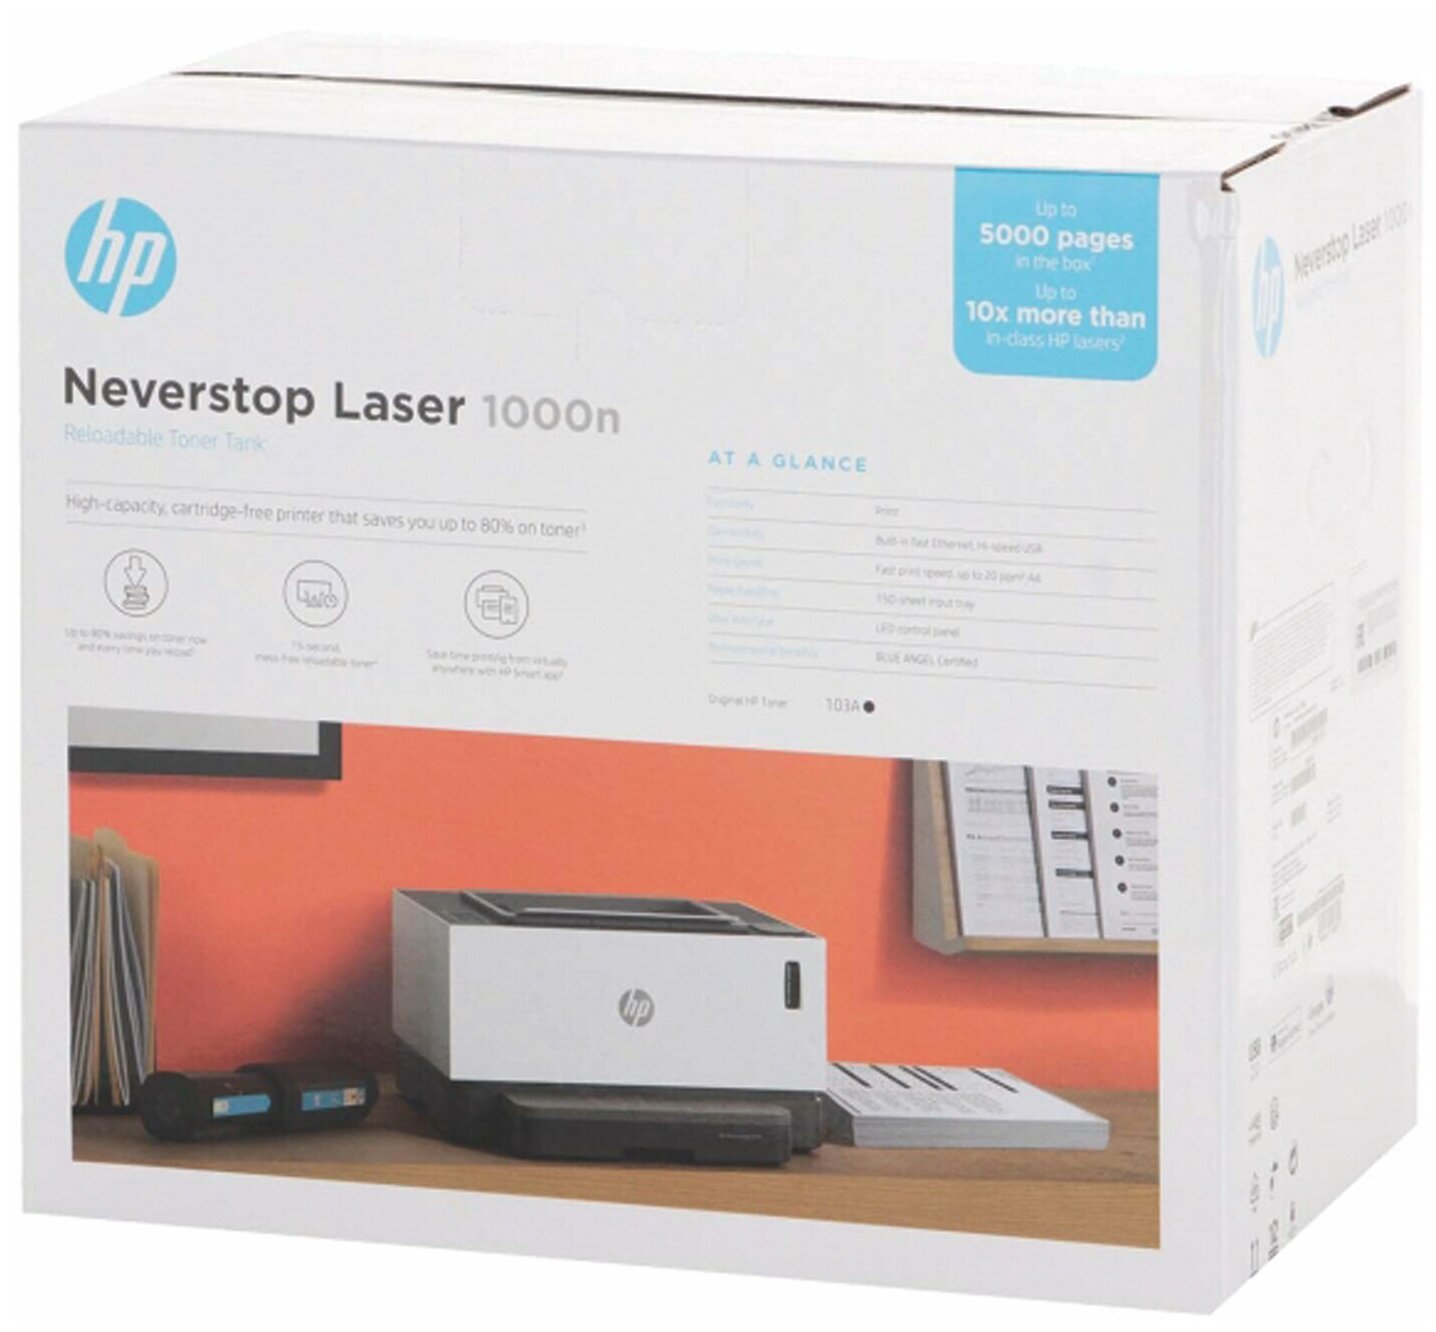 Принтер лазерный HP Neverstop Laser 1000n лазерный, цвет: белый [5hg74a] - фото №7